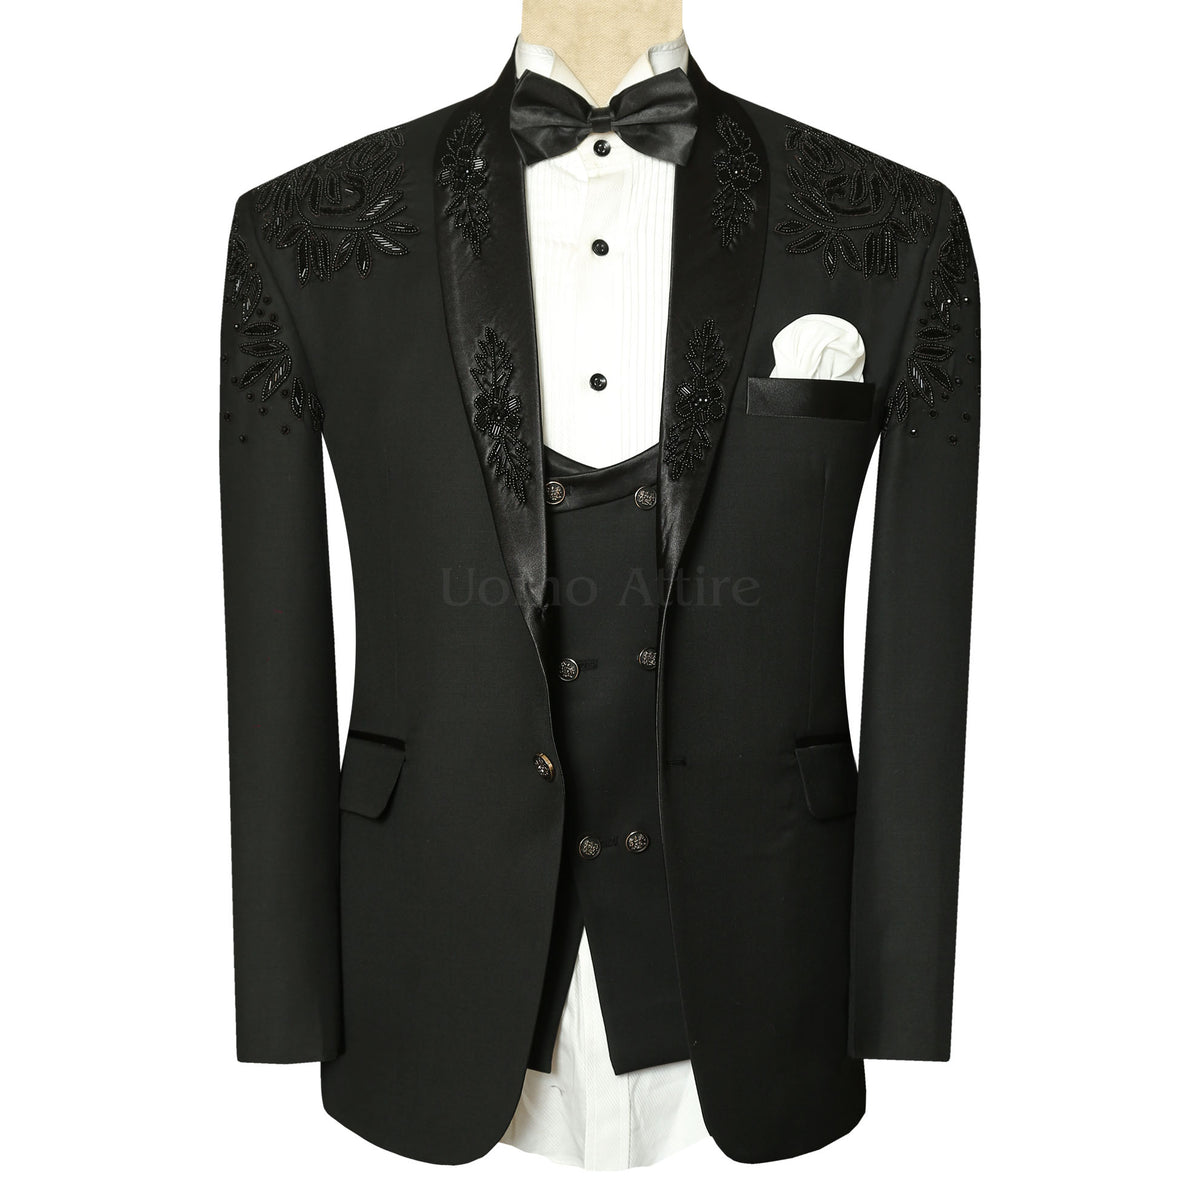 Men's Black Designer Tuxedo Suit for Men – Uomo Attire